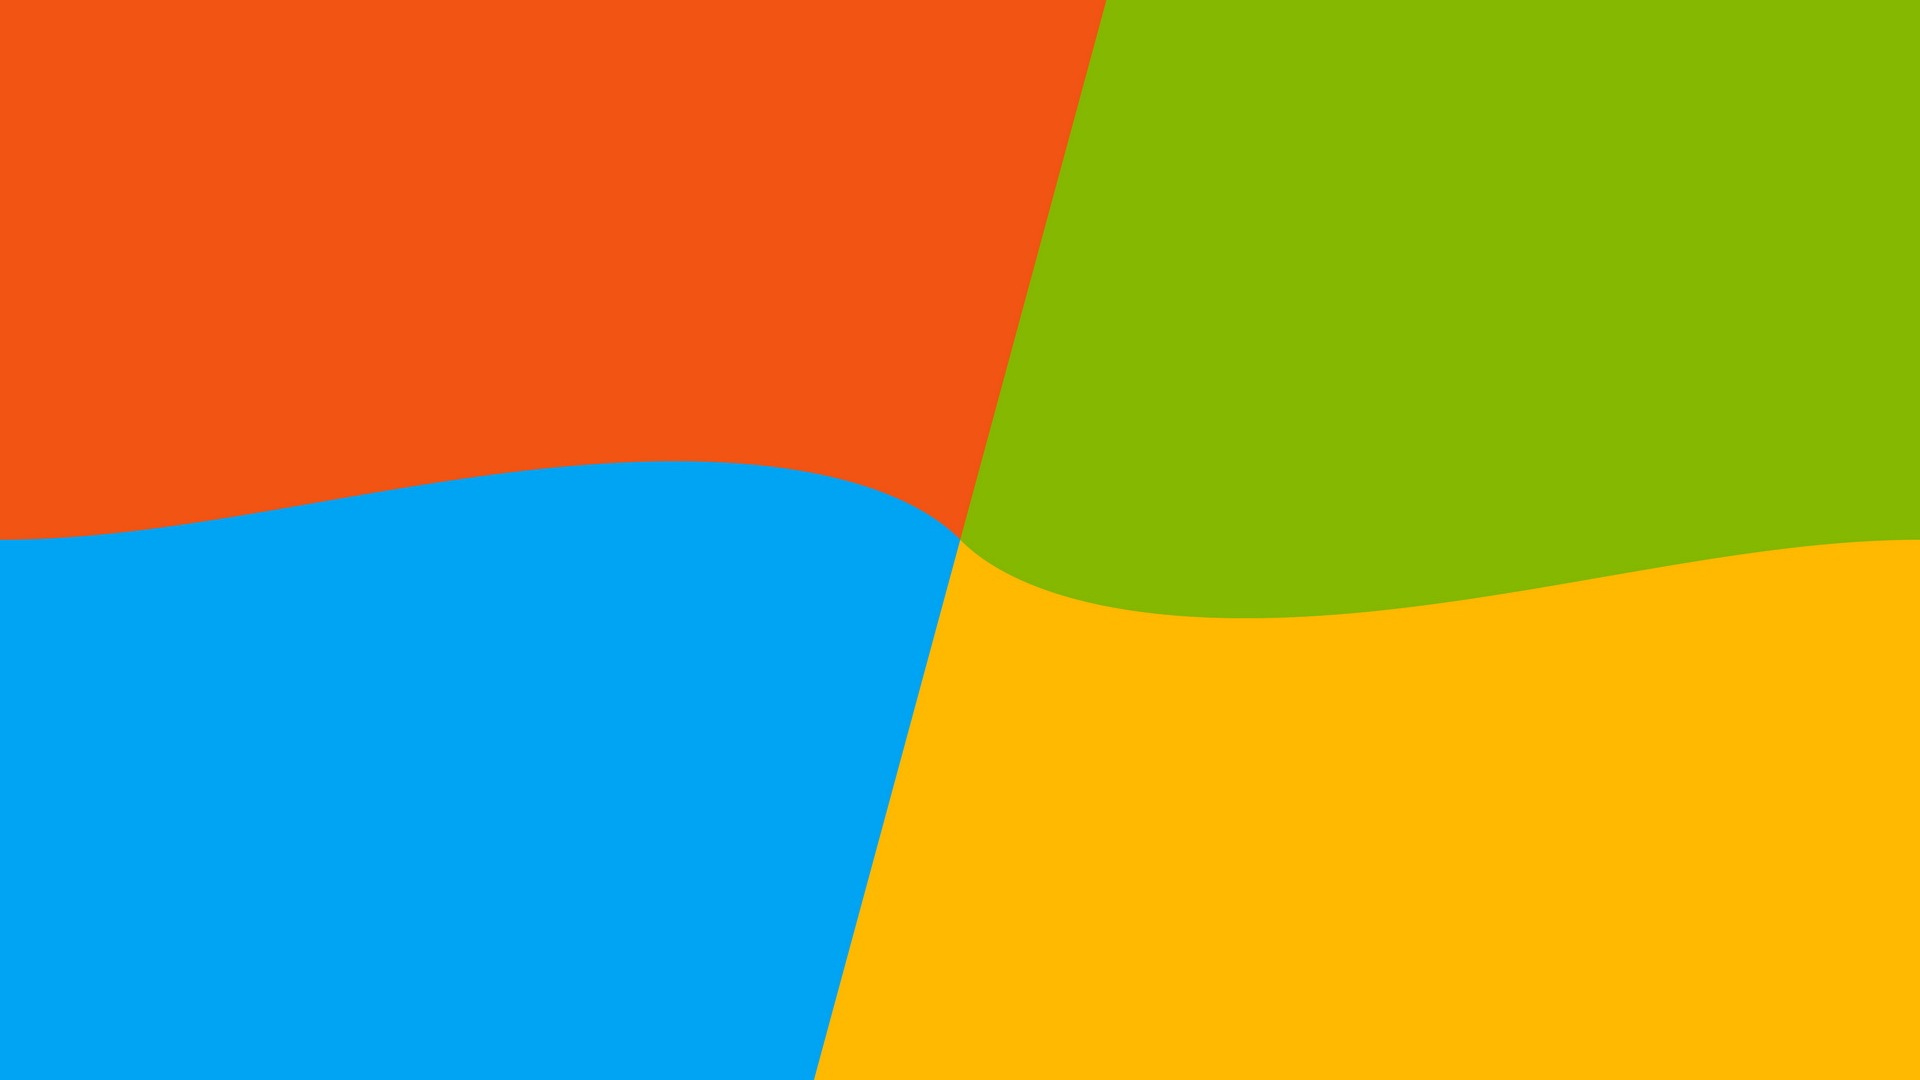 微软 Windows 9 系统主题 高清壁纸2 - 1920x1080